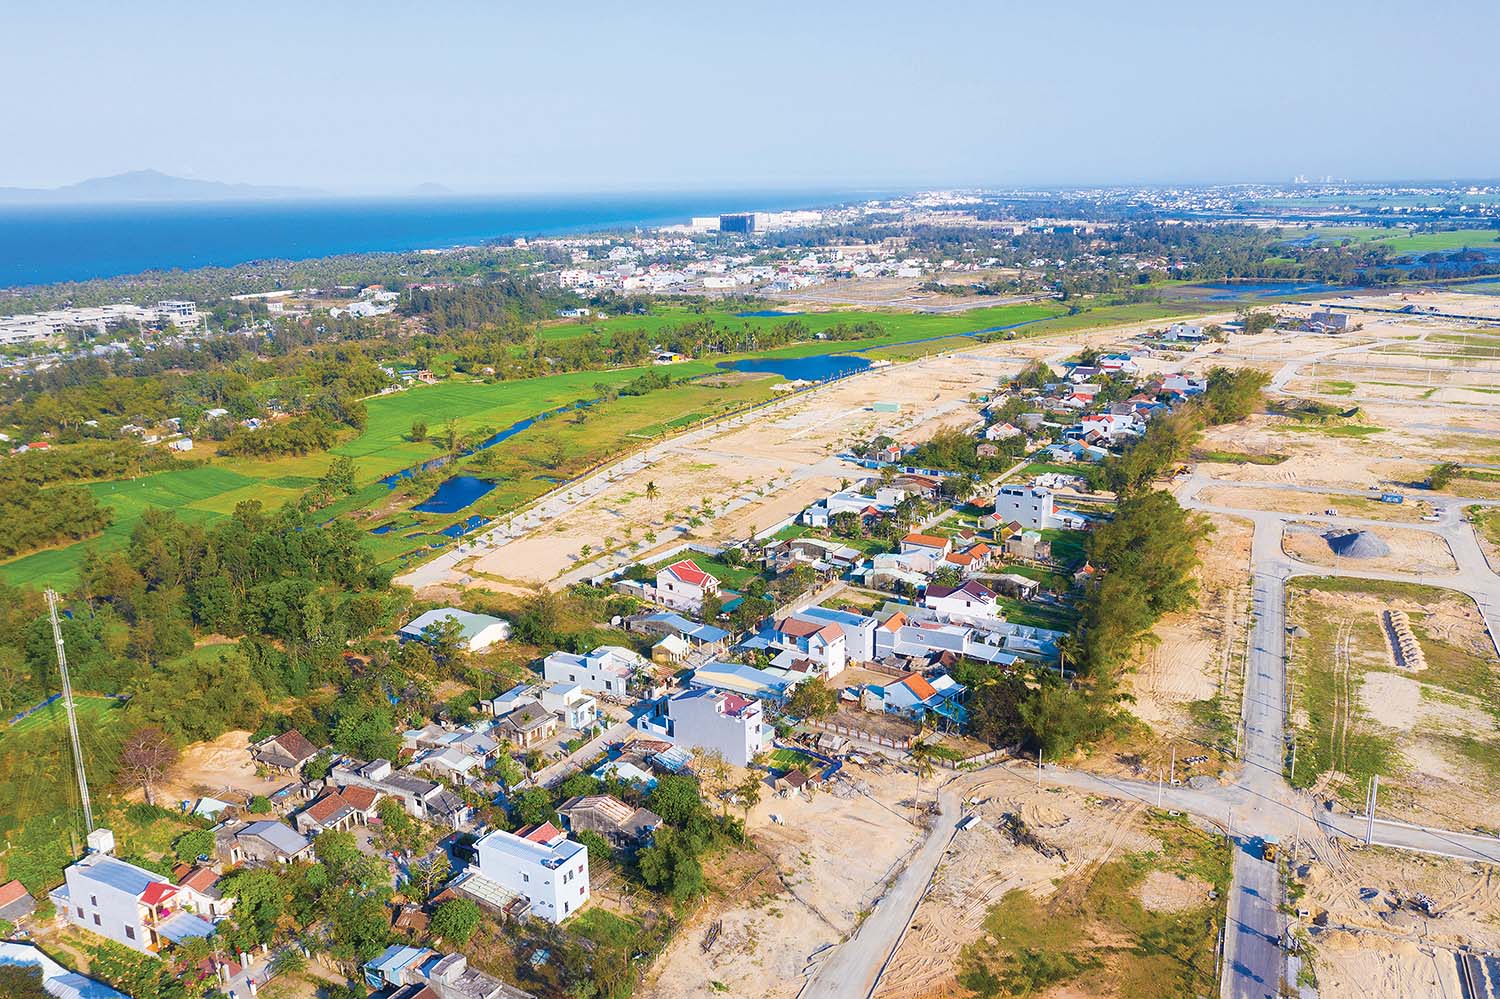 Nhiều Dự án ở Khu đô thị mới Điện Nam - Điện Ngọc triển khai thi công xây dựng khi chưa có quyết định phê duyệt phương án bồi thường hỗ trợ, chưa có quyết định thu hồi đất